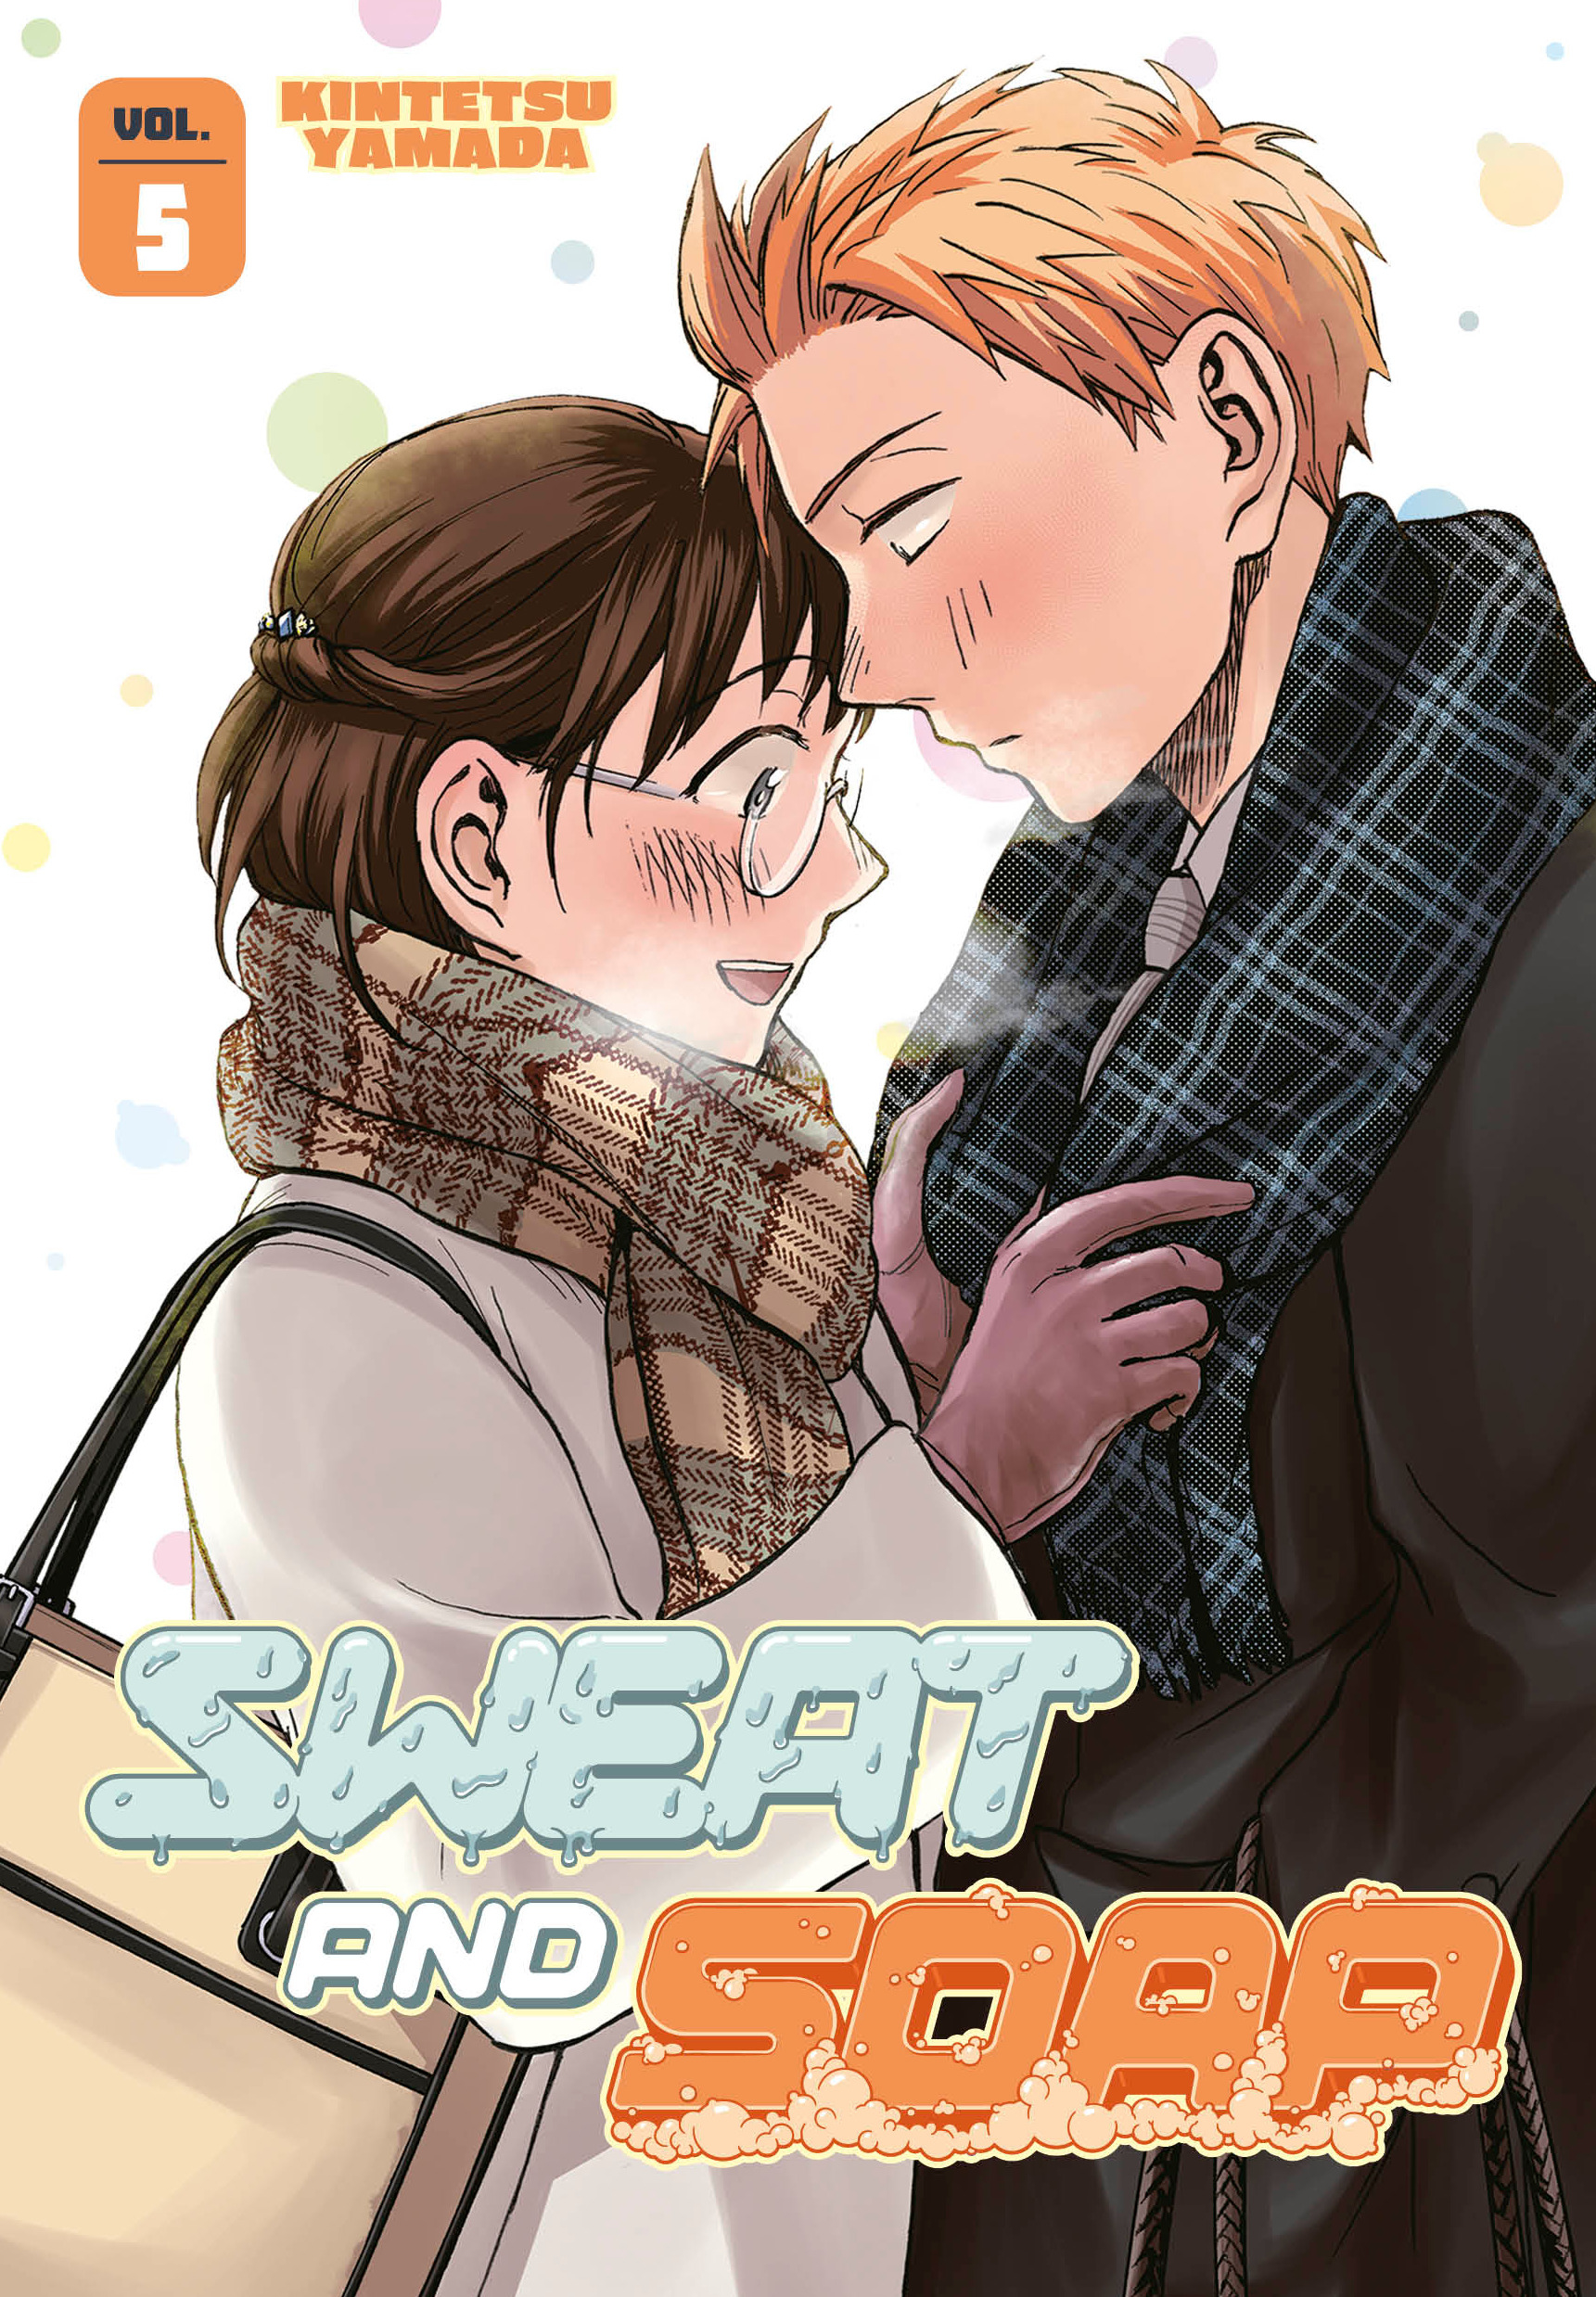 Sweat And Soap Manga Volume 5 (Mature)